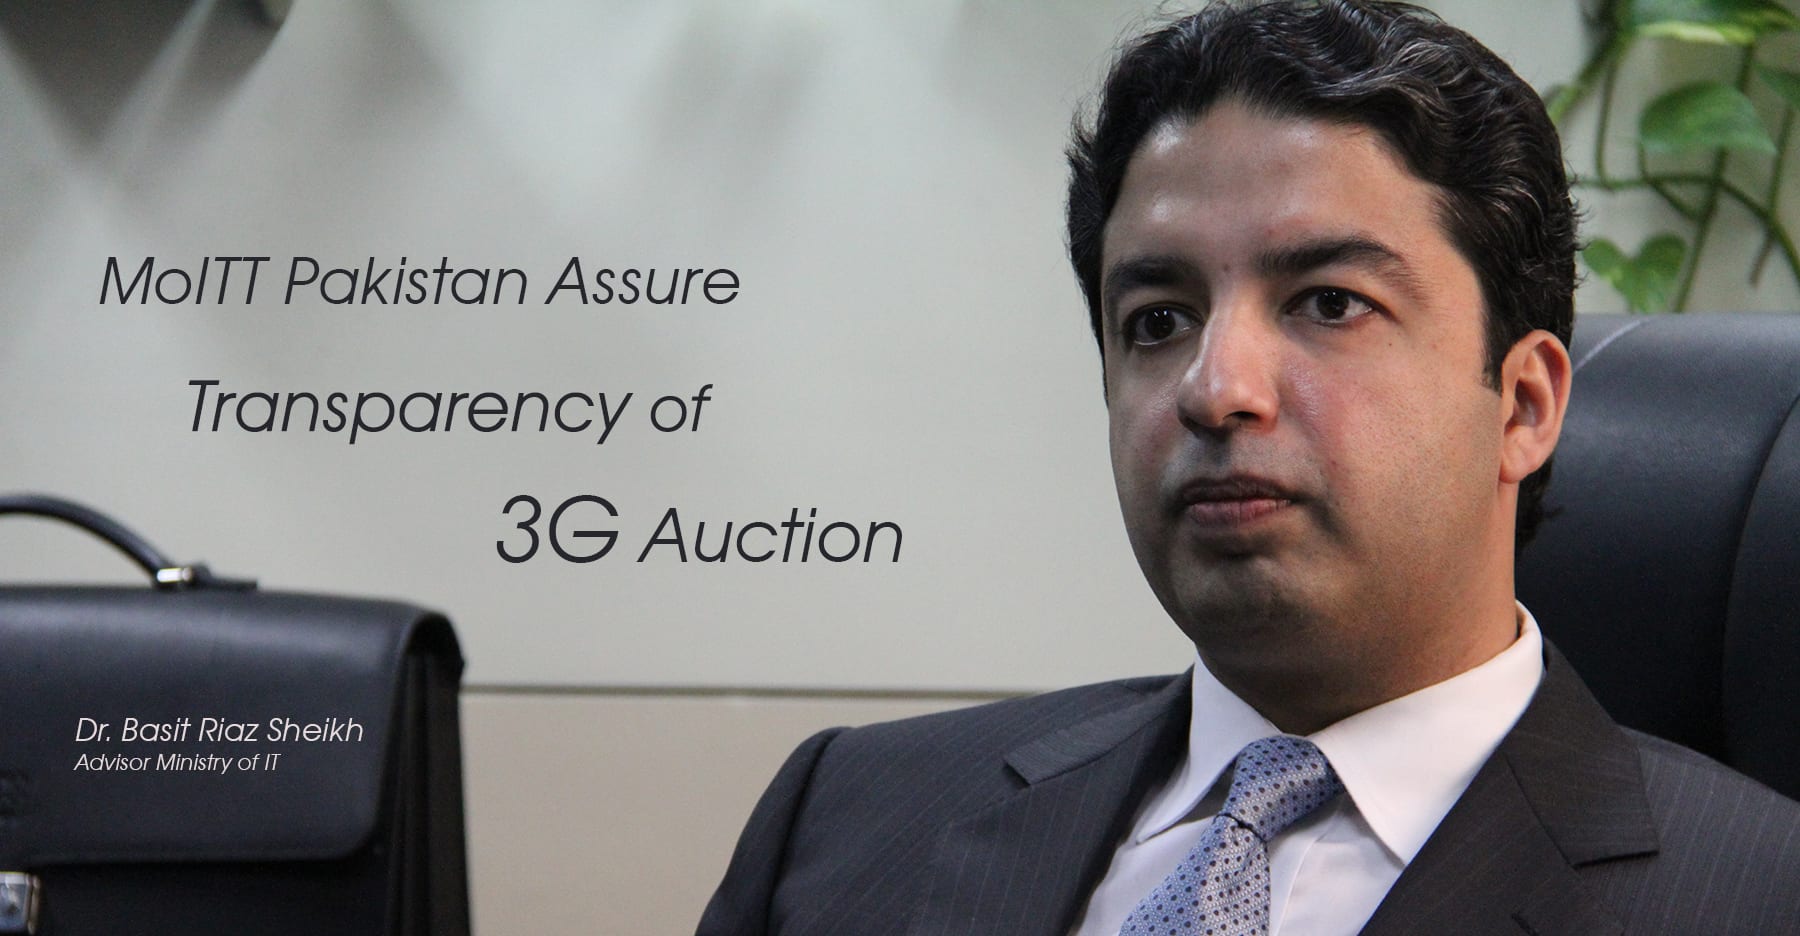 MoITT Pakistan Assure Transparency of 3G Auction